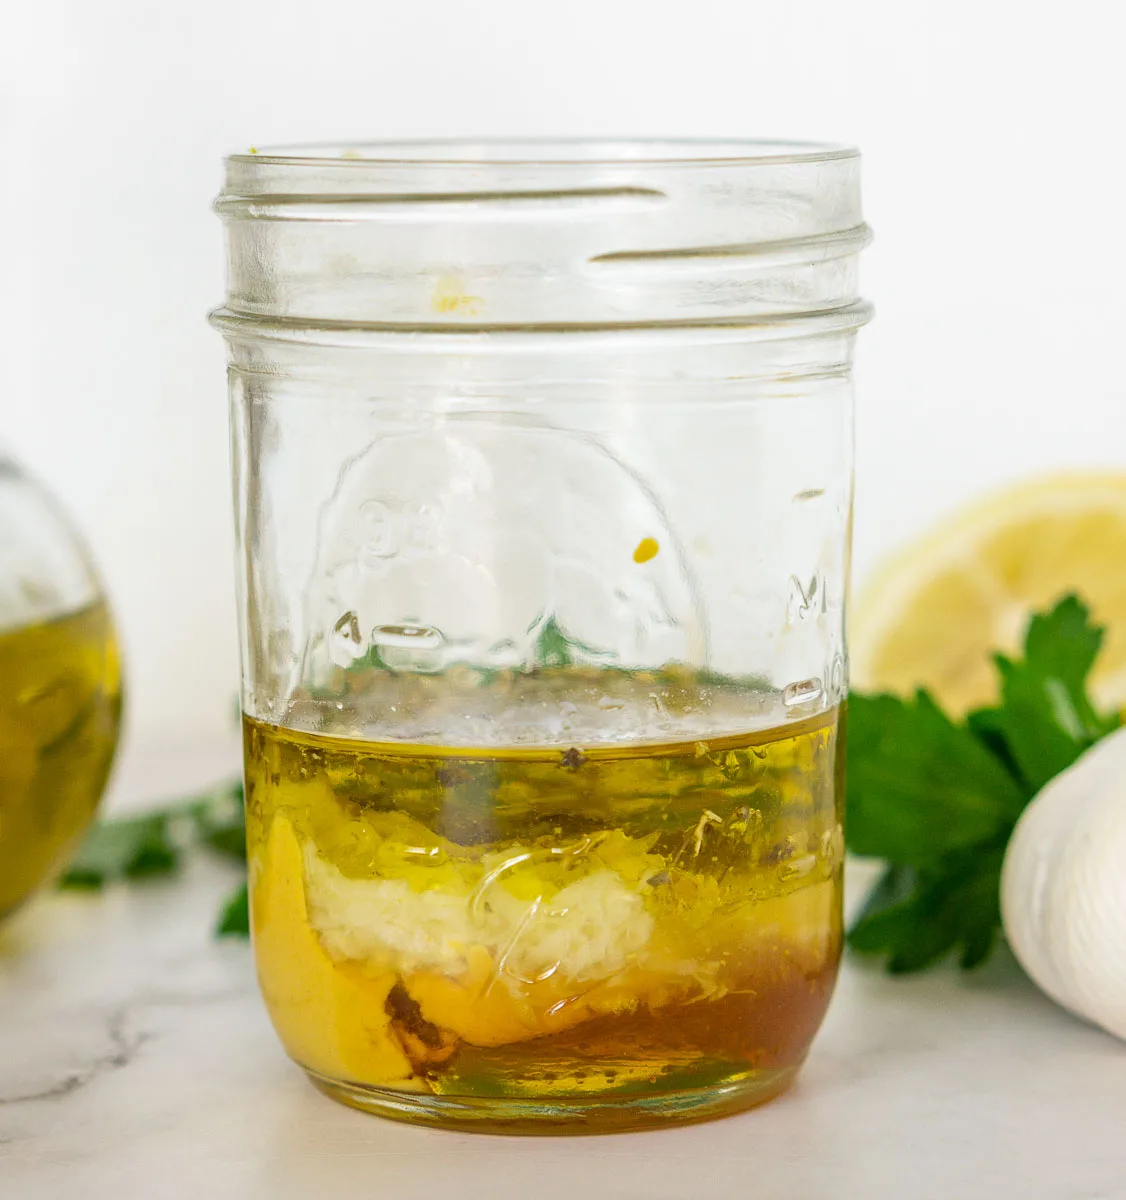 Ingredients in a jar to make lemon Dijon vinaigrette dressing for grilled asparagus salad.